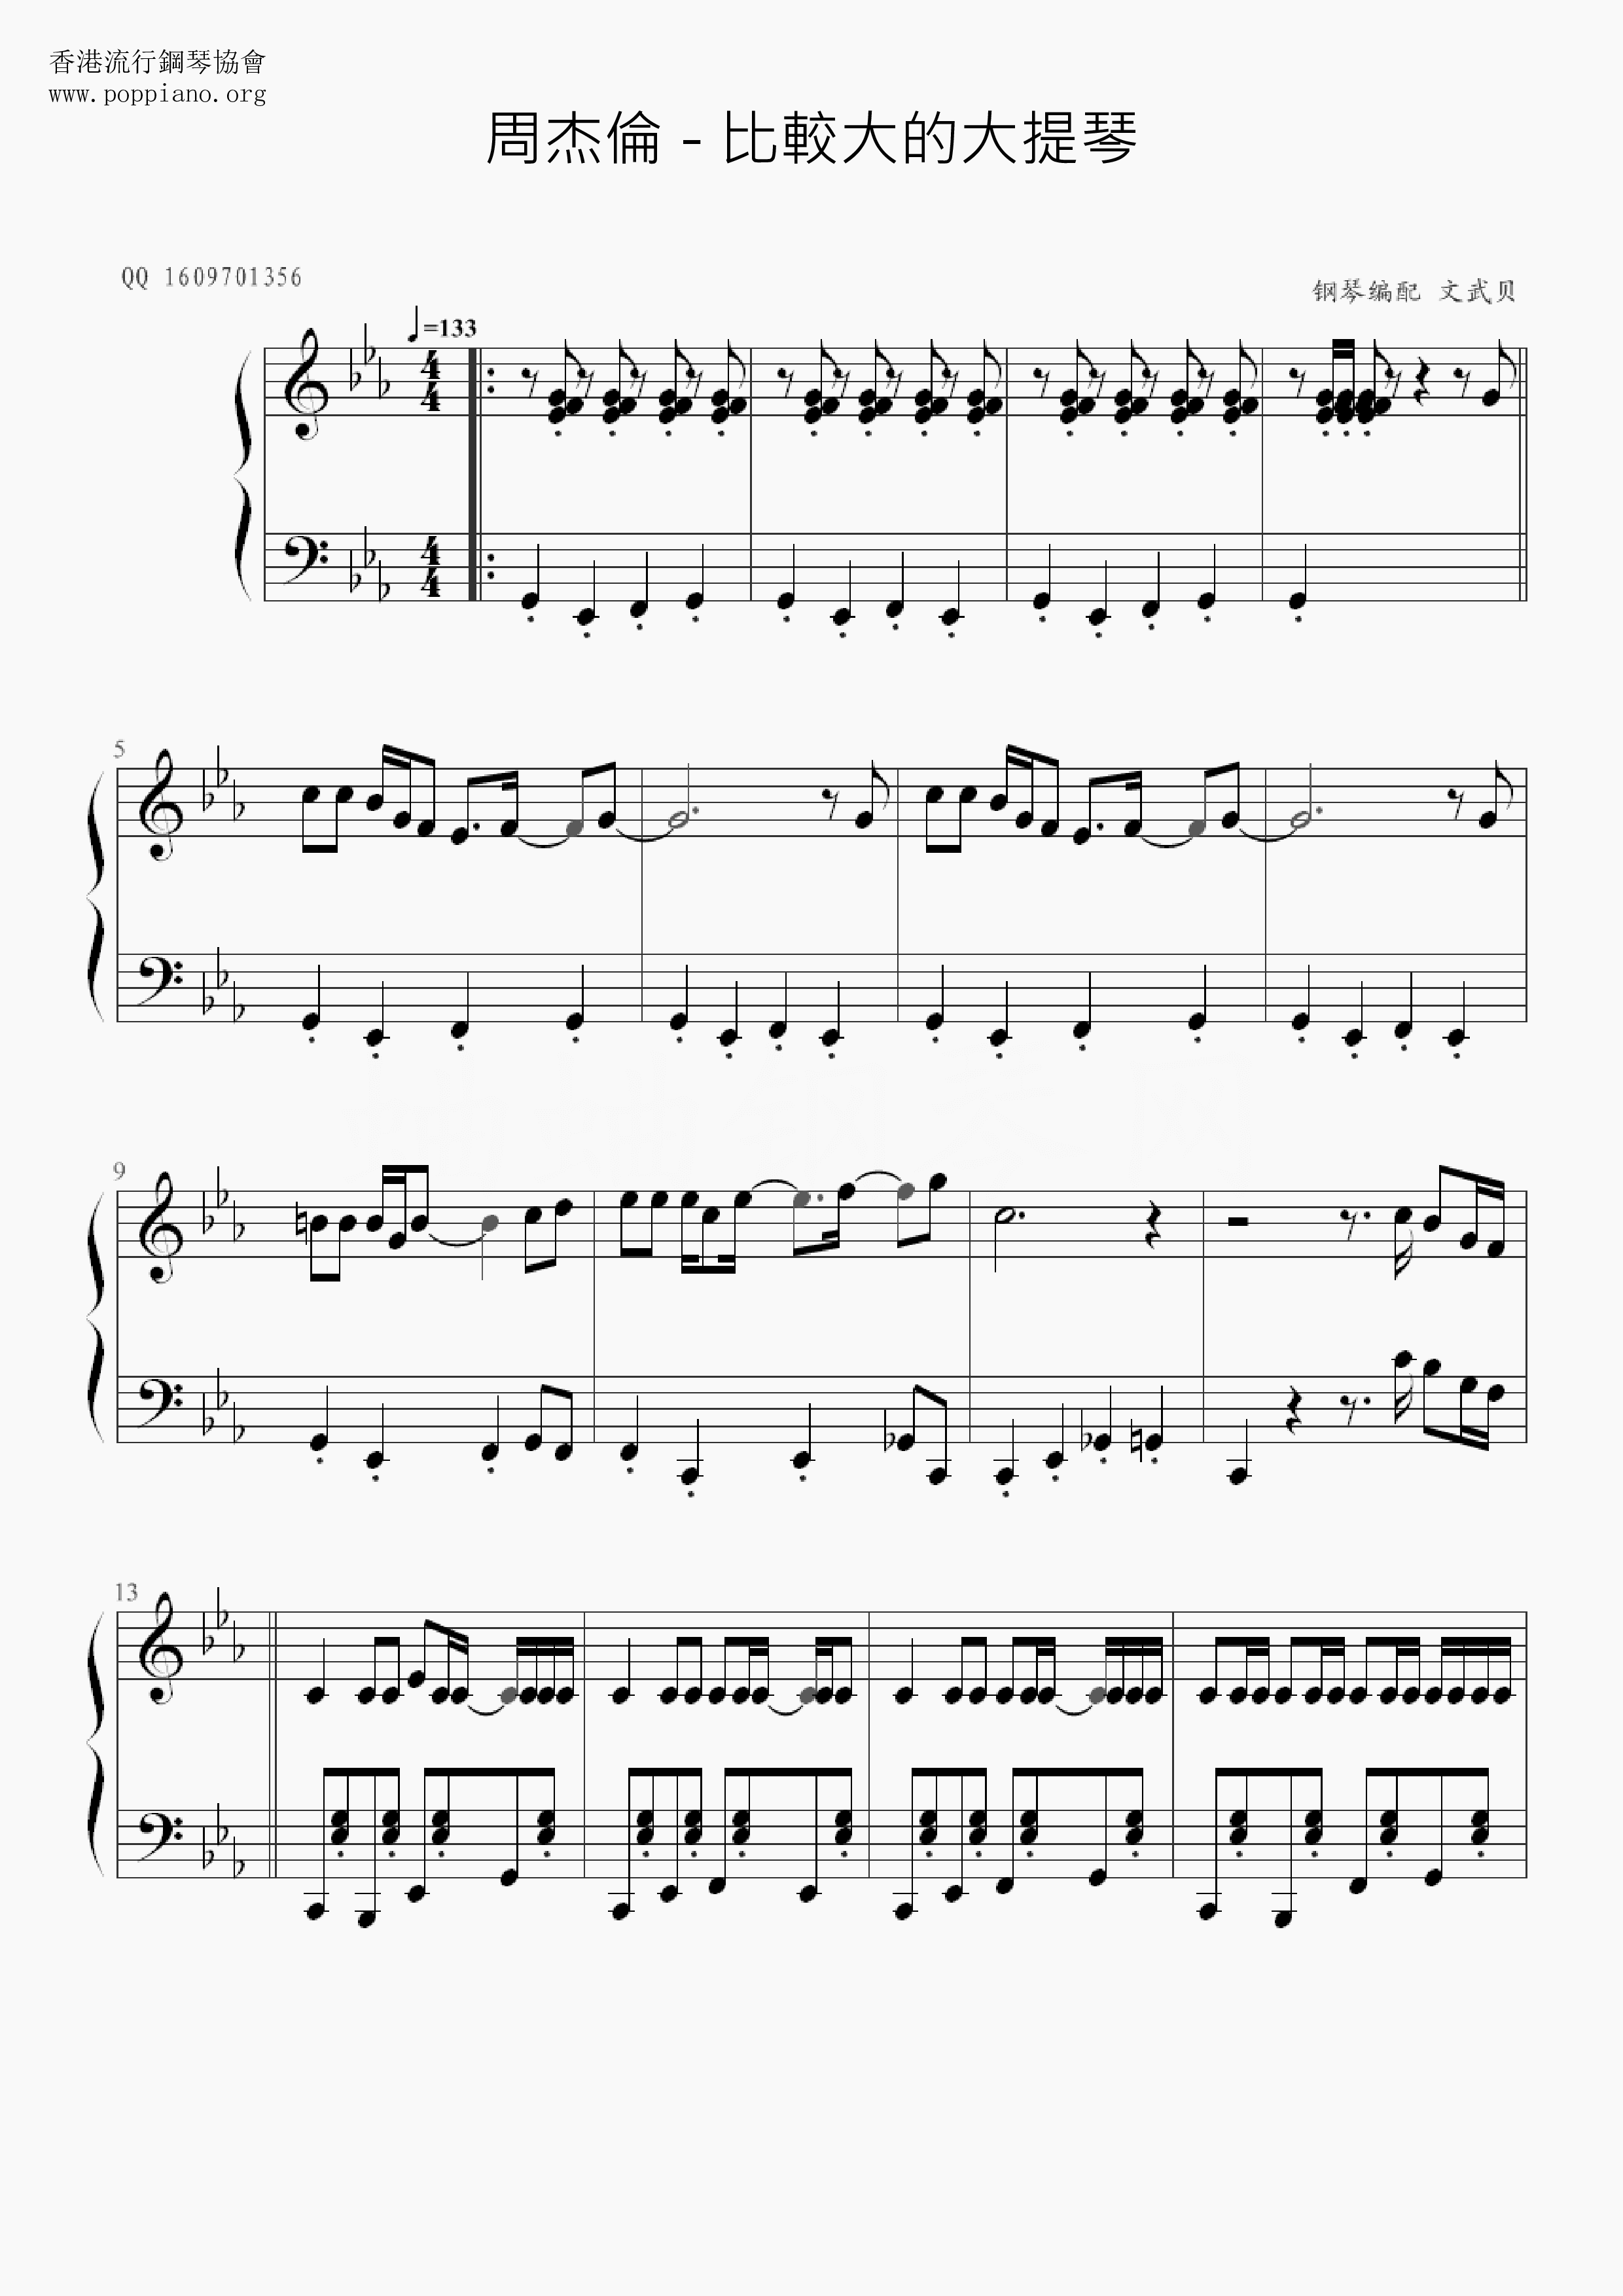 Larger Cello Score